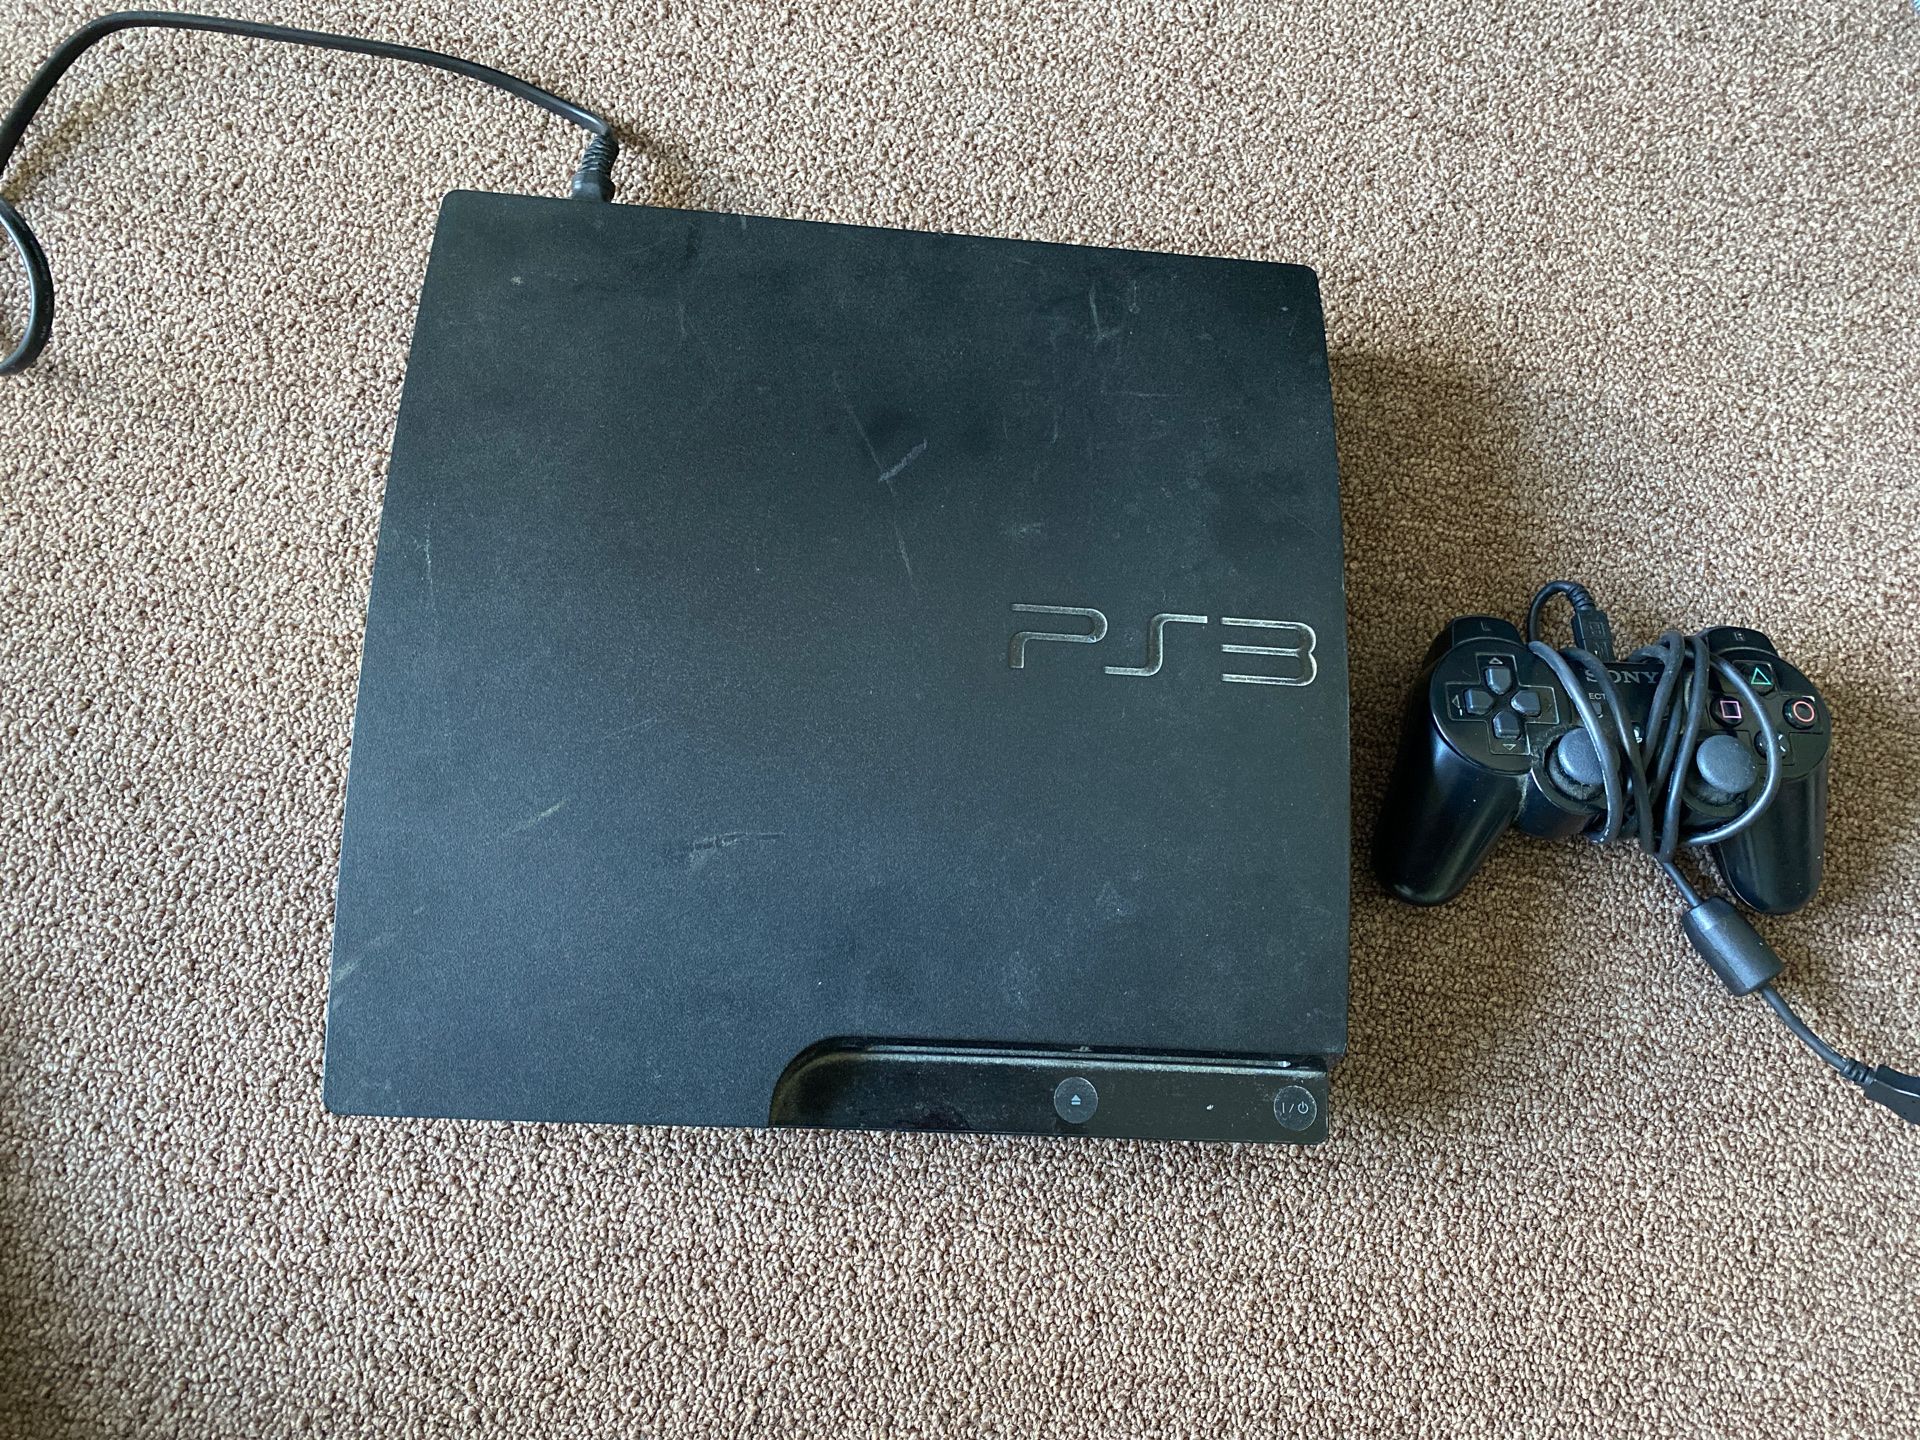 PlayStation 3 (Slim)